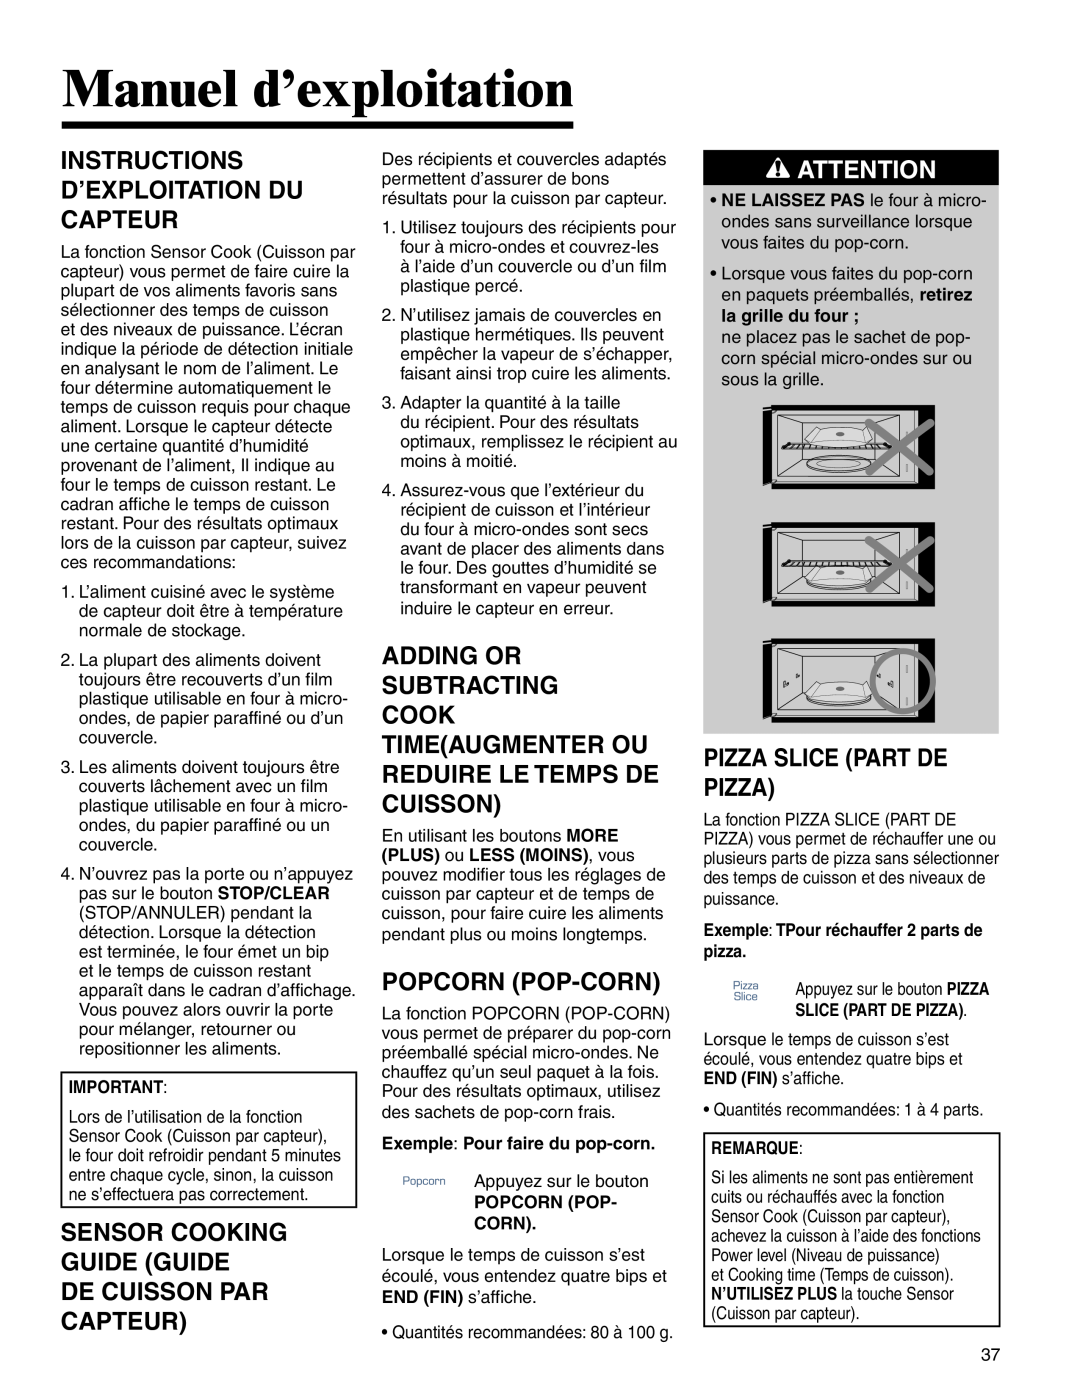 Amana AMV5164BA/BC Instructions D’Exploitation Du Capteur, Sensor Cooking Guide Guide De Cuisson Par Capteur 